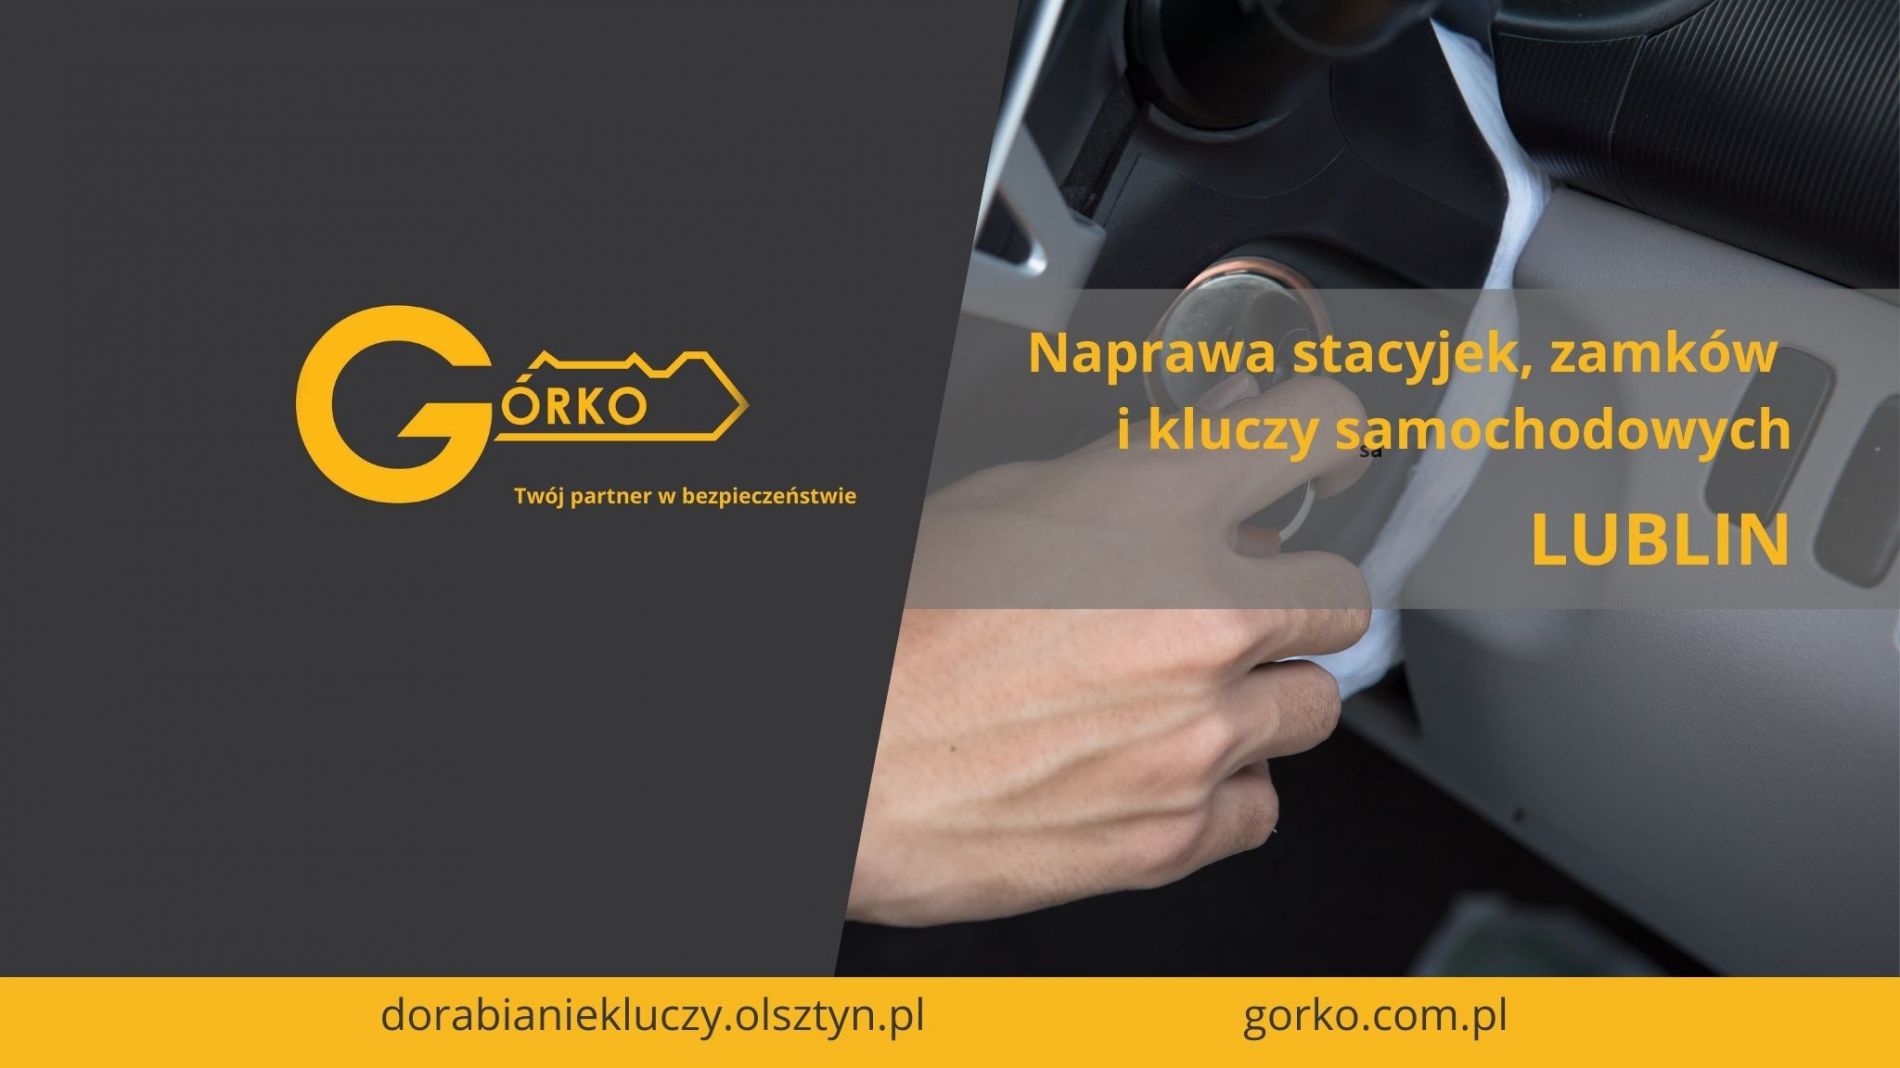 Naprawa stacyjek, zamków i kluczy samochodowych – Lublin (Usługa zdalna)